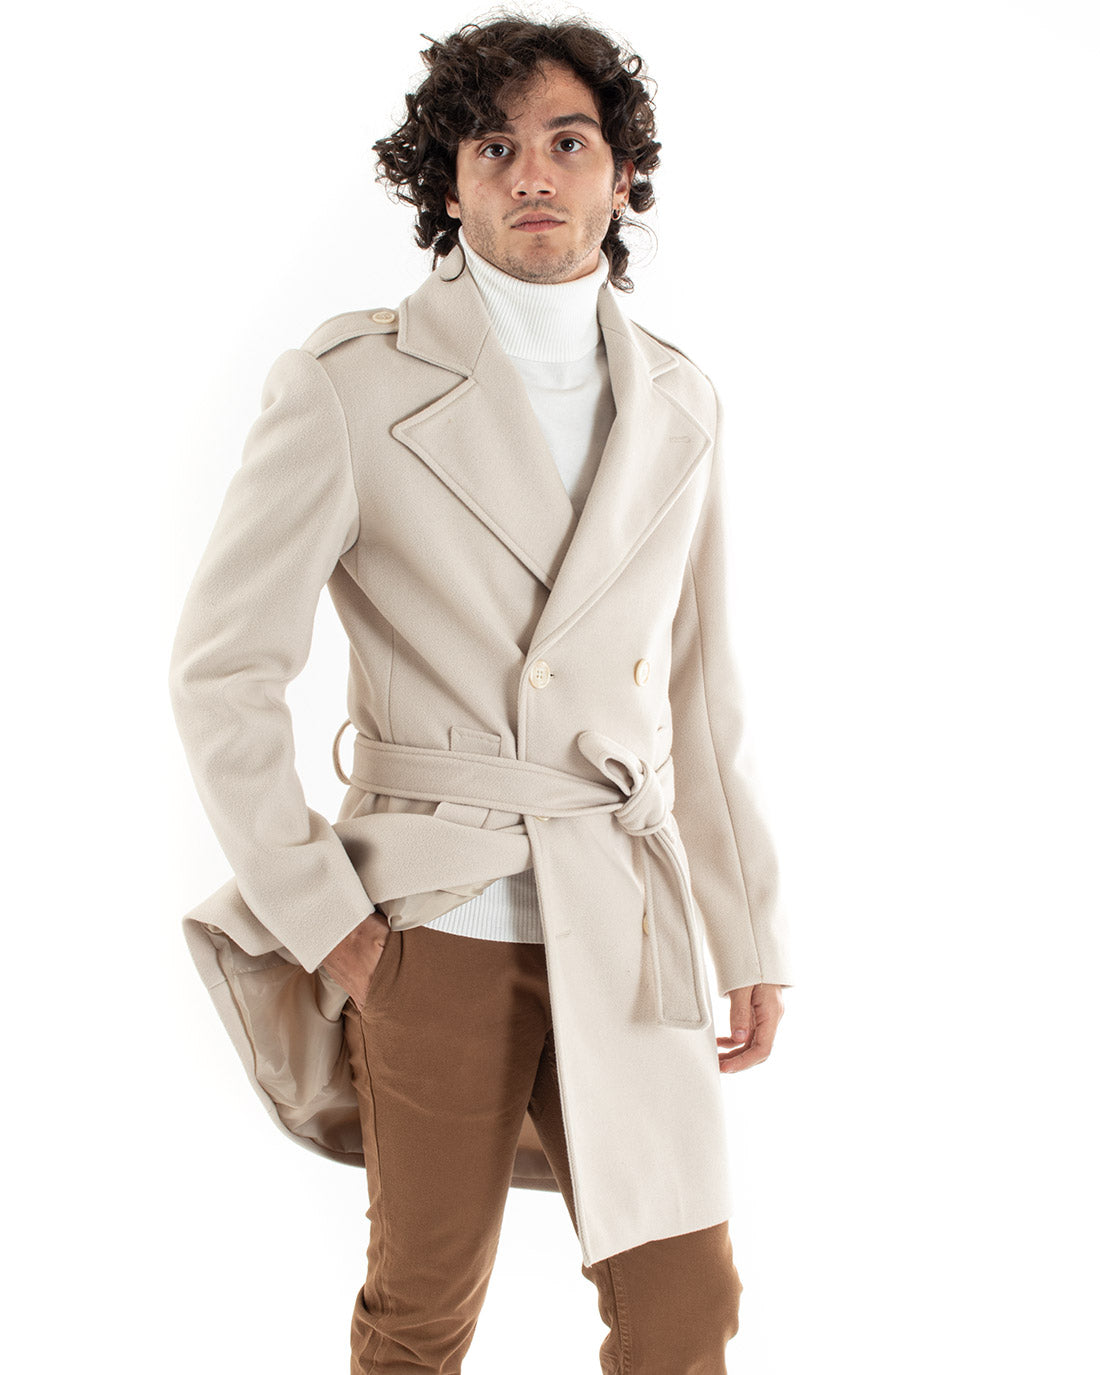 Double-breasted Coat Men Jacket With Belt Long Cream Jacket Elegant Jacket GIOSAL-G2981A